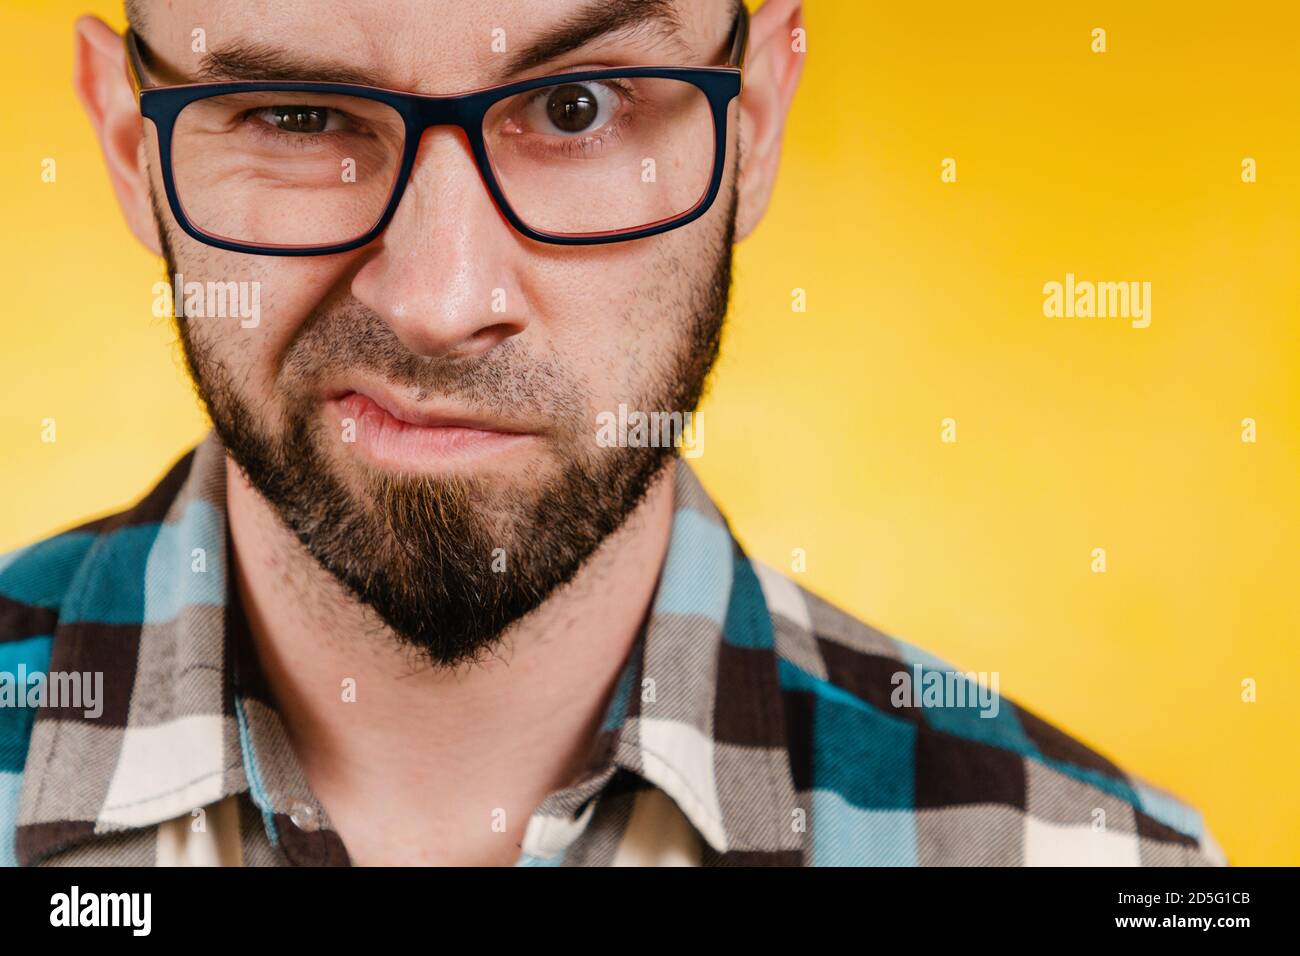 Menschen und Emotionen. Ein bärtiger Mann mit Brille und einem blau karierten Hemd drückt seine Abneigung aus. Gelber Hintergrund. Nahaufnahme. Stockfoto